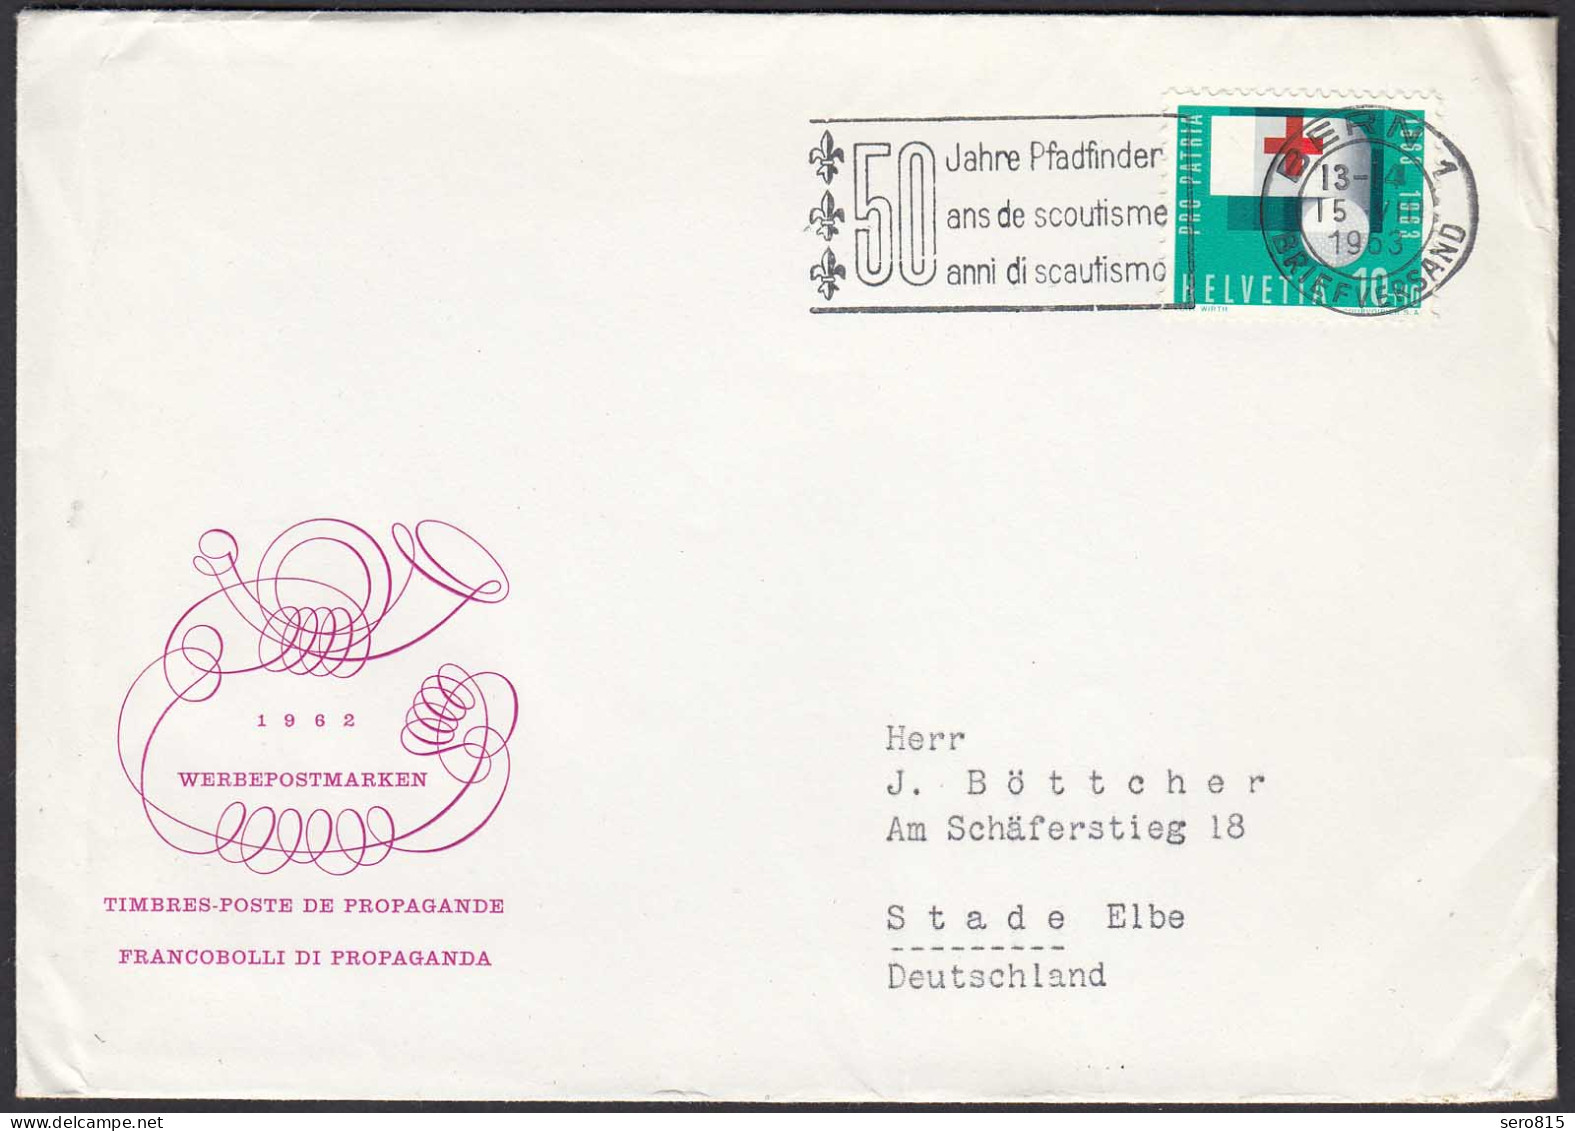 50 Jahre Pfadfinder Stempel Aus Bern 1963 Brief Nach Stade  (23773 - Sonstige - Europa